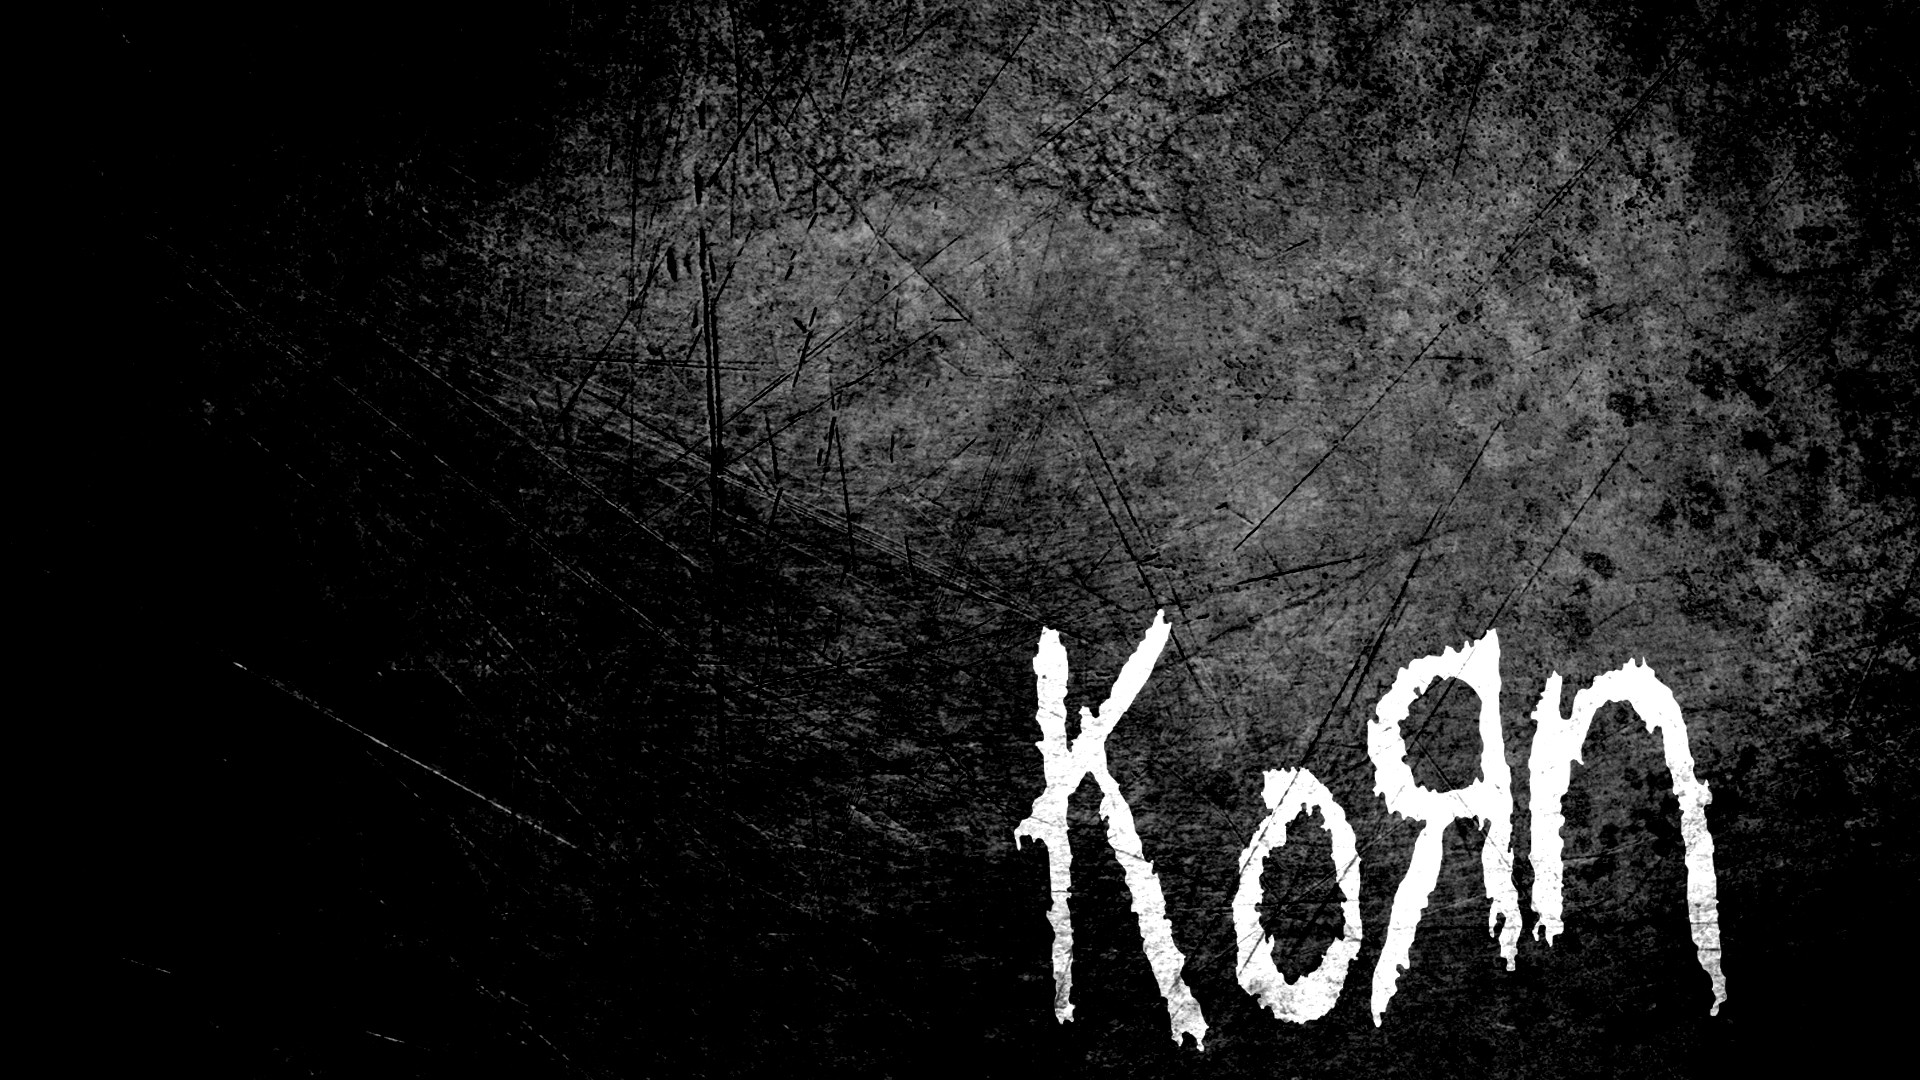 General 1920x1080 Korn metal music music grunge minimalism band digital art